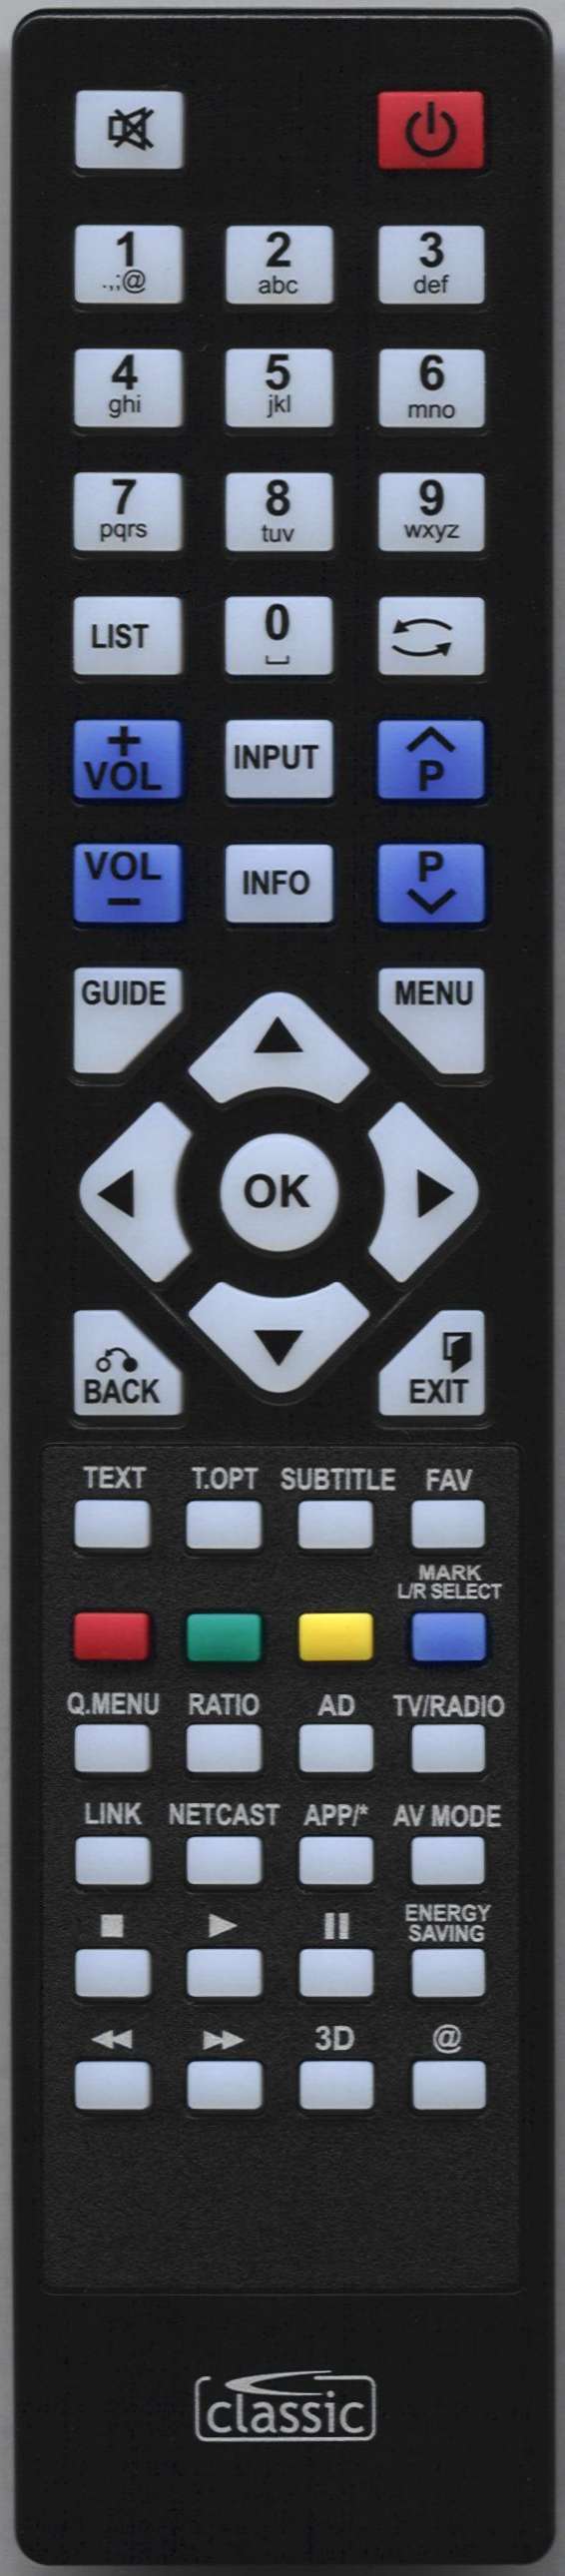 LG 19LE3400-ZA Remote Control Alternative